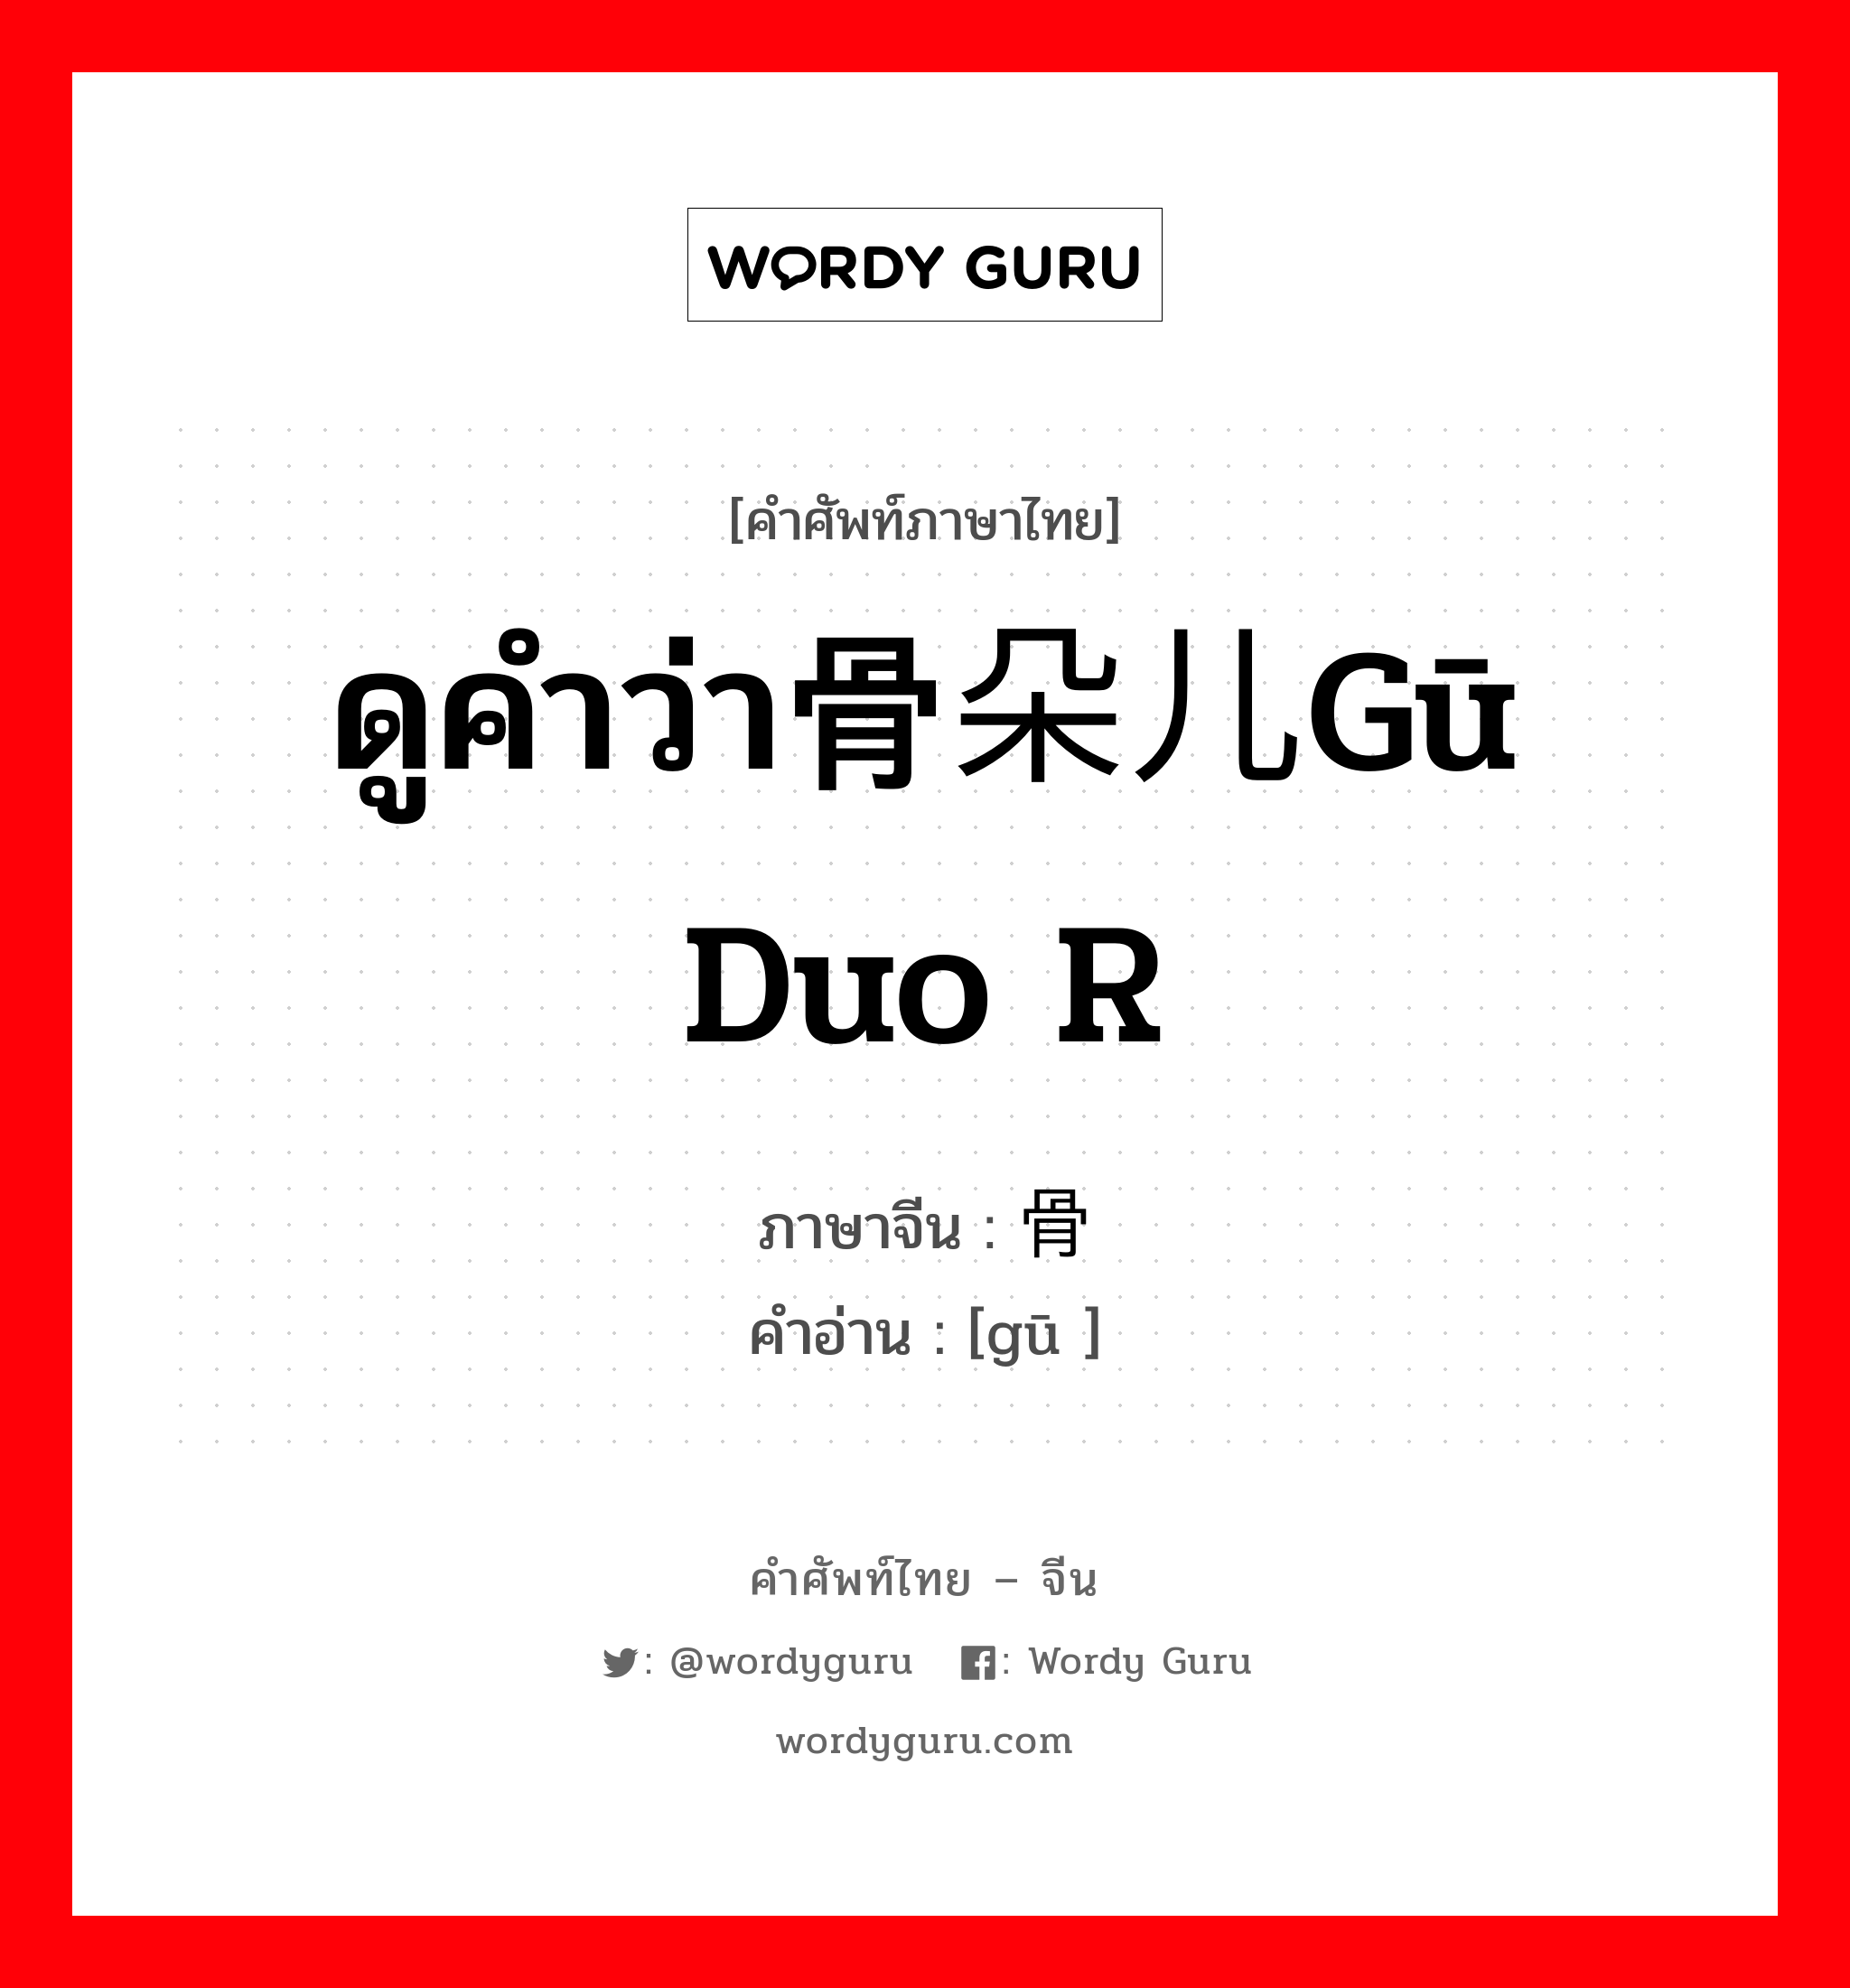 ดูคำว่า骨朵儿gū duo r ภาษาจีนคืออะไร, คำศัพท์ภาษาไทย - จีน ดูคำว่า骨朵儿gū duo r ภาษาจีน 骨 คำอ่าน [gū ]